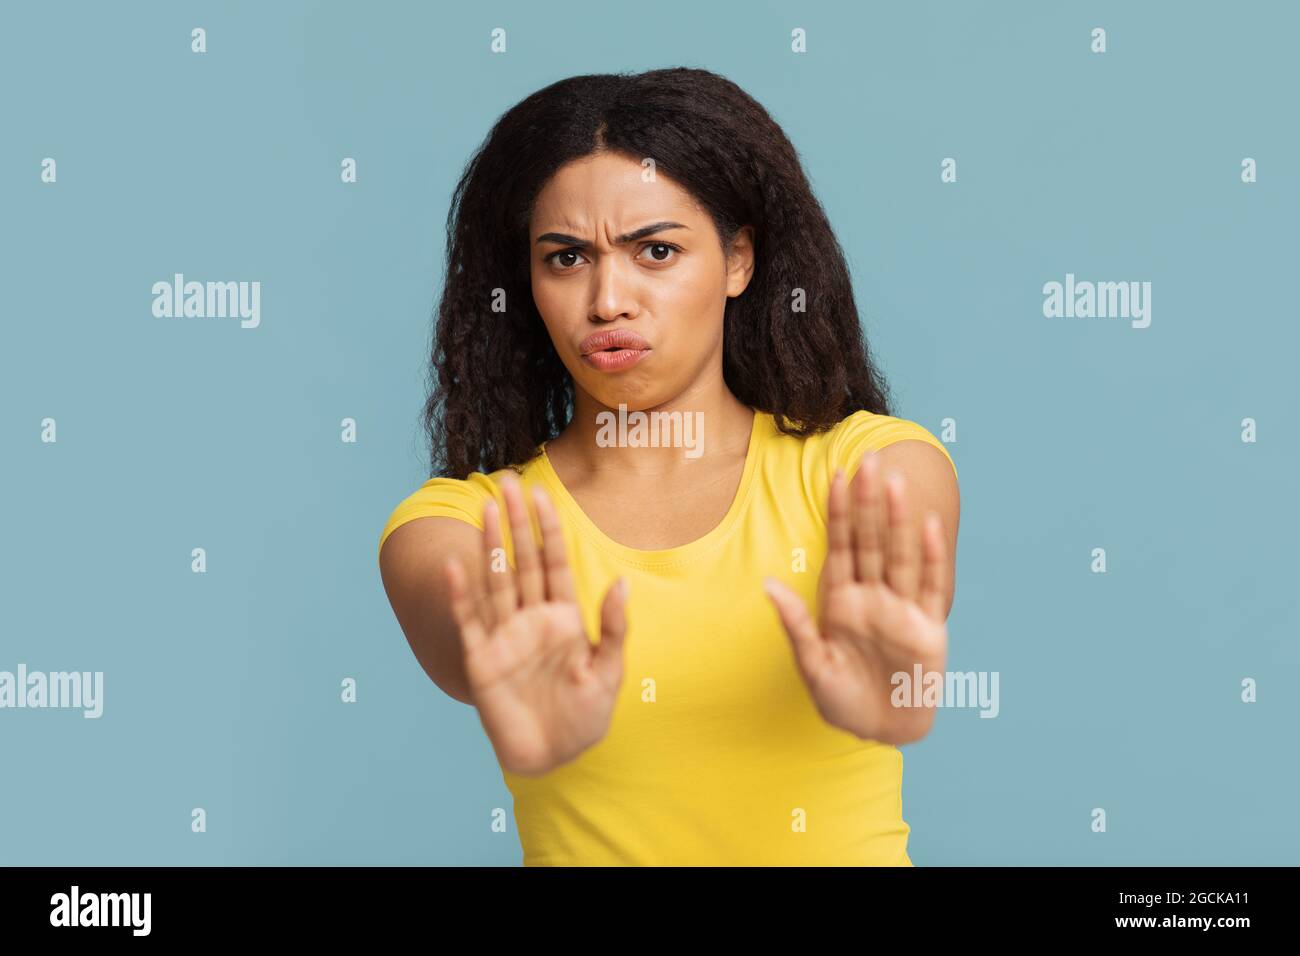 Vielen Dank, aber nein Porträt einer afroamerikanischen Dame, die eine Stop-Hand-Geste macht, die auf blauem Studiohintergrund steht Stockfoto